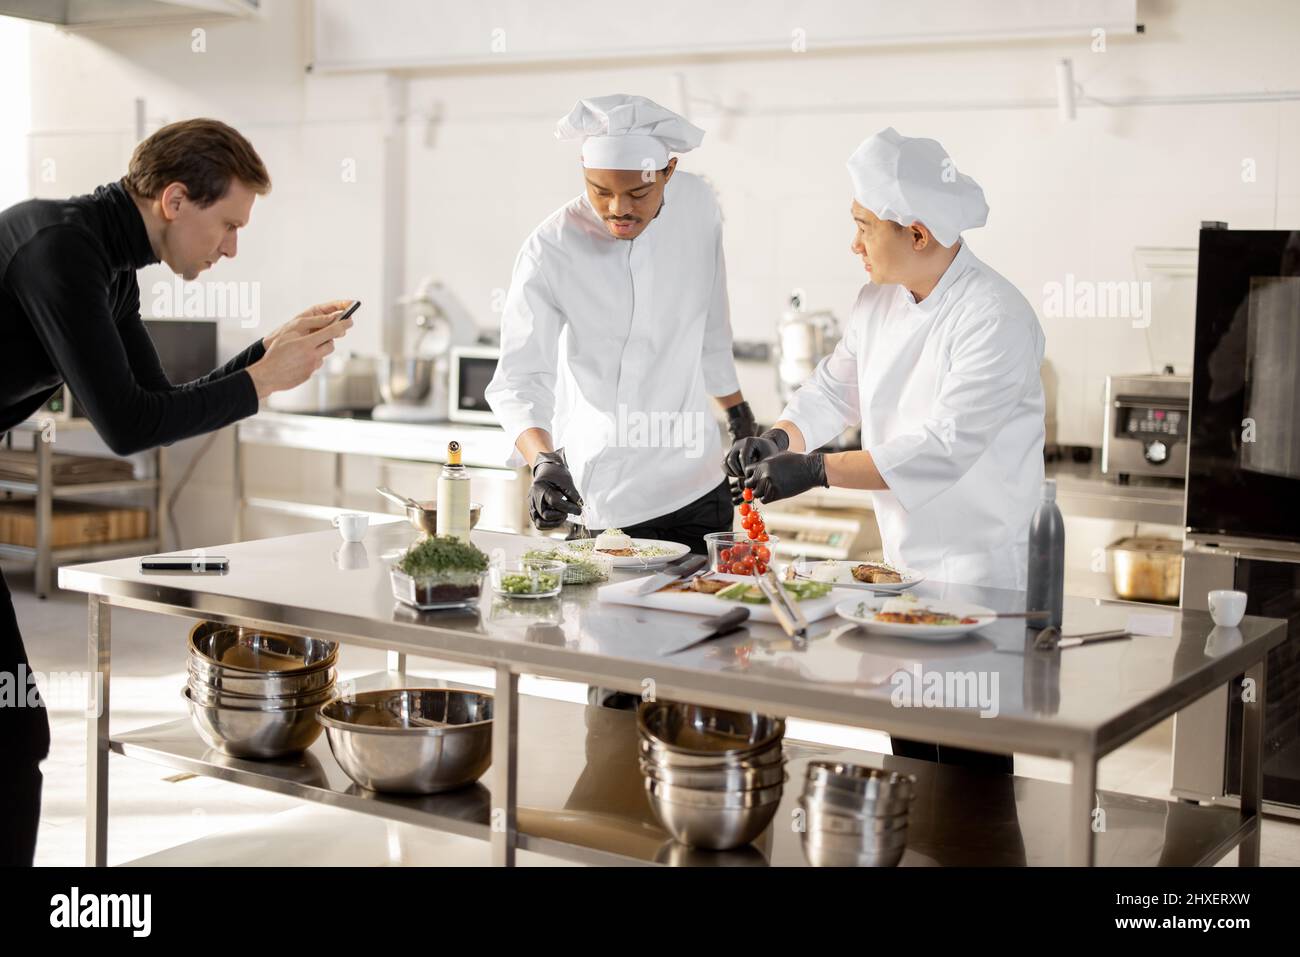 Mann zeichnet am Telefon den Prozess des Kochens von zwei Köchen in einer professionellen Küche auf. Lateinamerikanische und asiatische Köche bereiten Speisen für soziale Medien zu. Konzept des kulinarischen Videobloggens Stockfoto